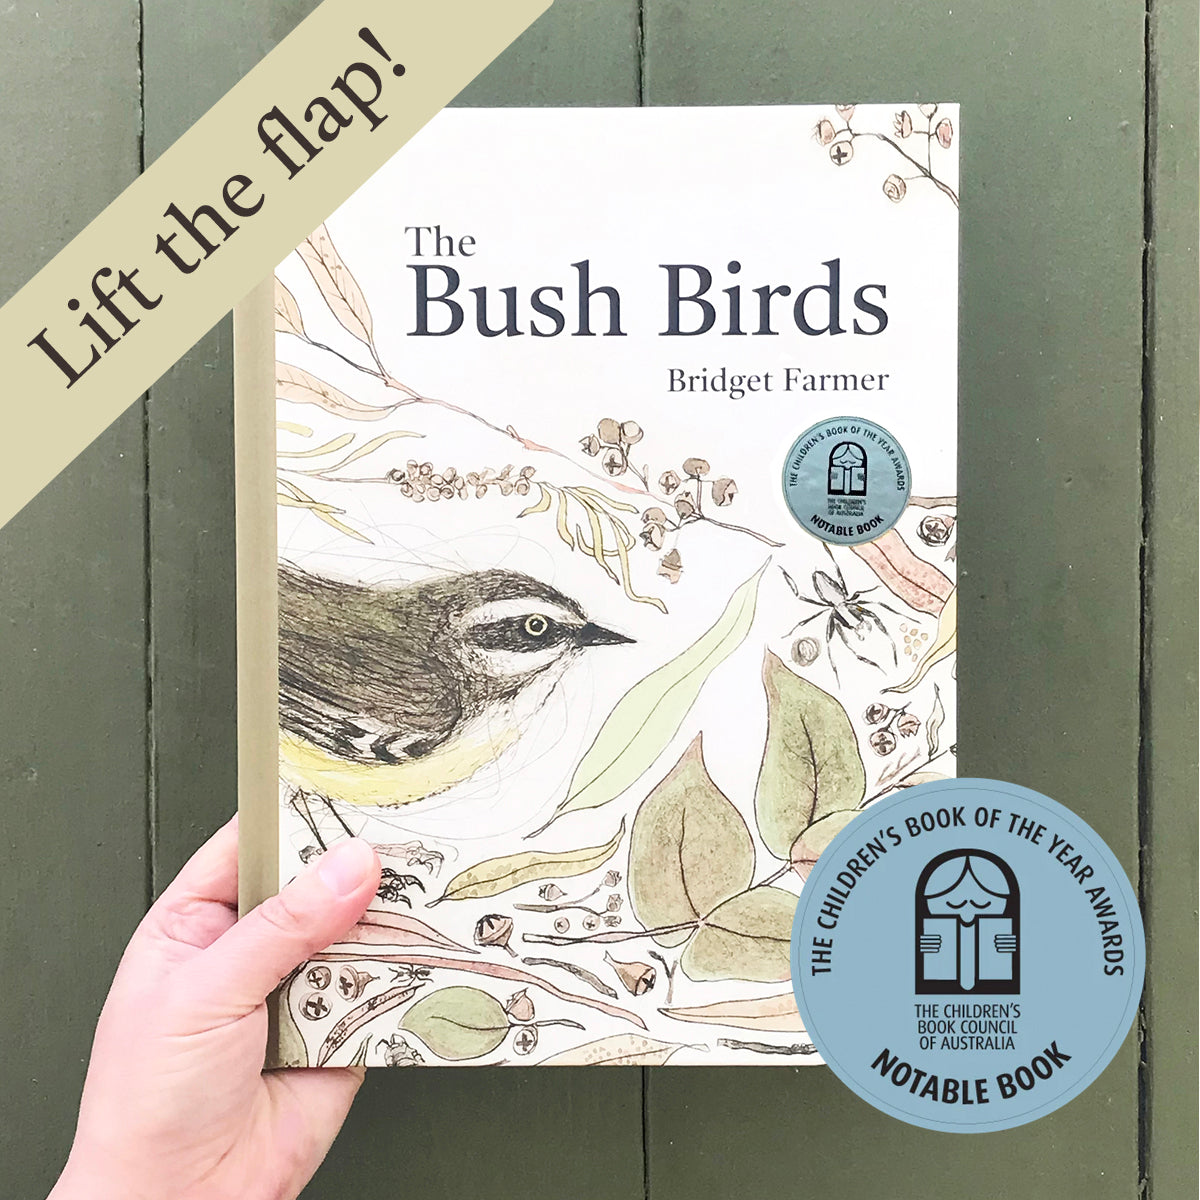 THE BUSH BIRDS - Lift The Flap Children's Bird Book by Bridget Farmer